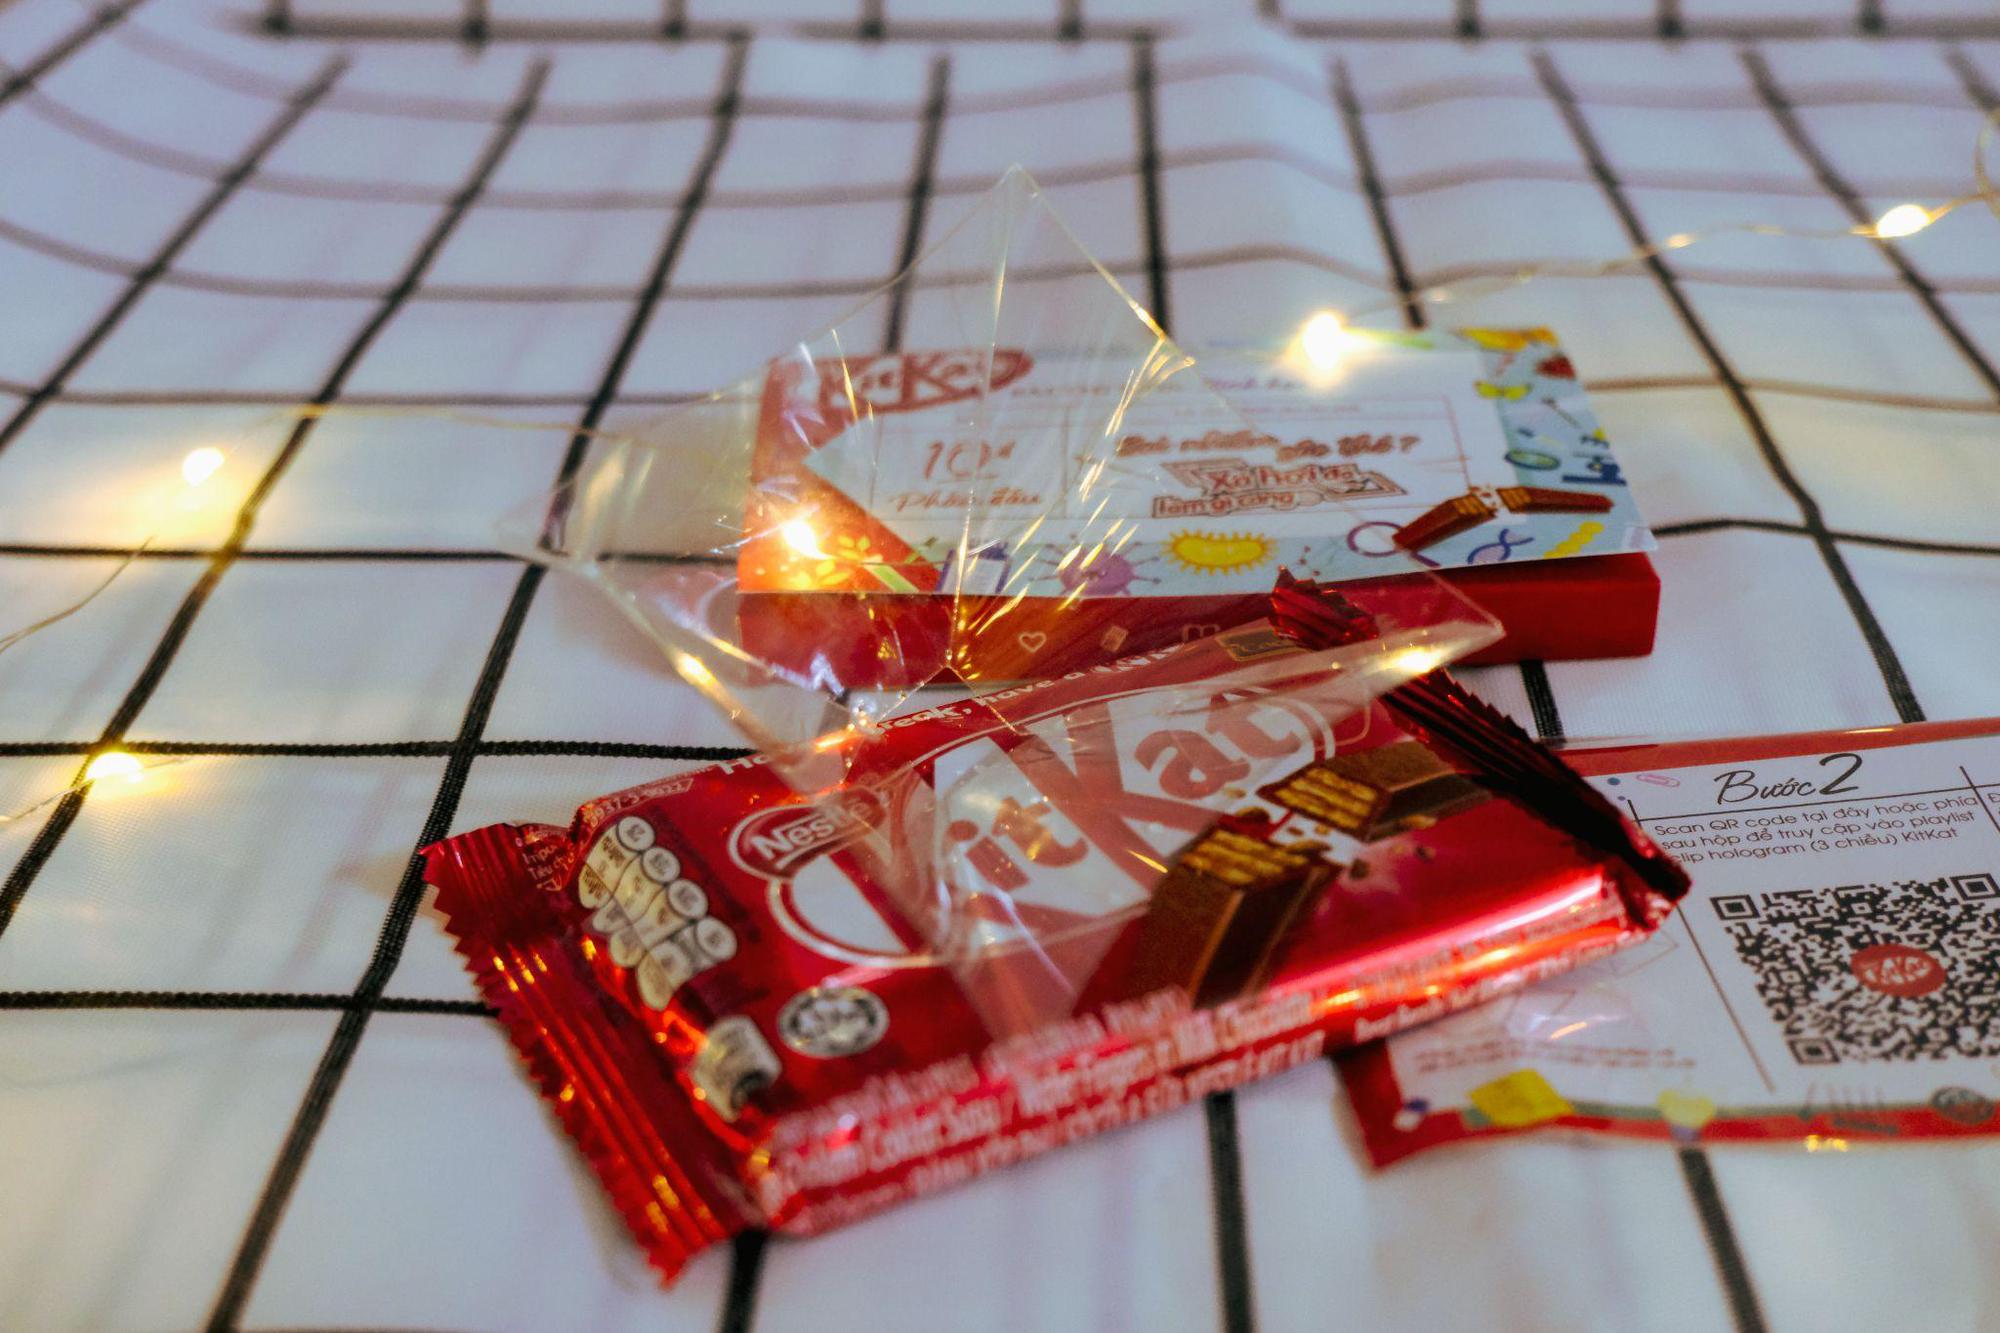 Cùng KitKat tự tin vượt qua kì thi THPT với lời động viên đi kèm công nghệ xịn xò lần đầu xuất hiện tại Việt Nam - Ảnh 6.